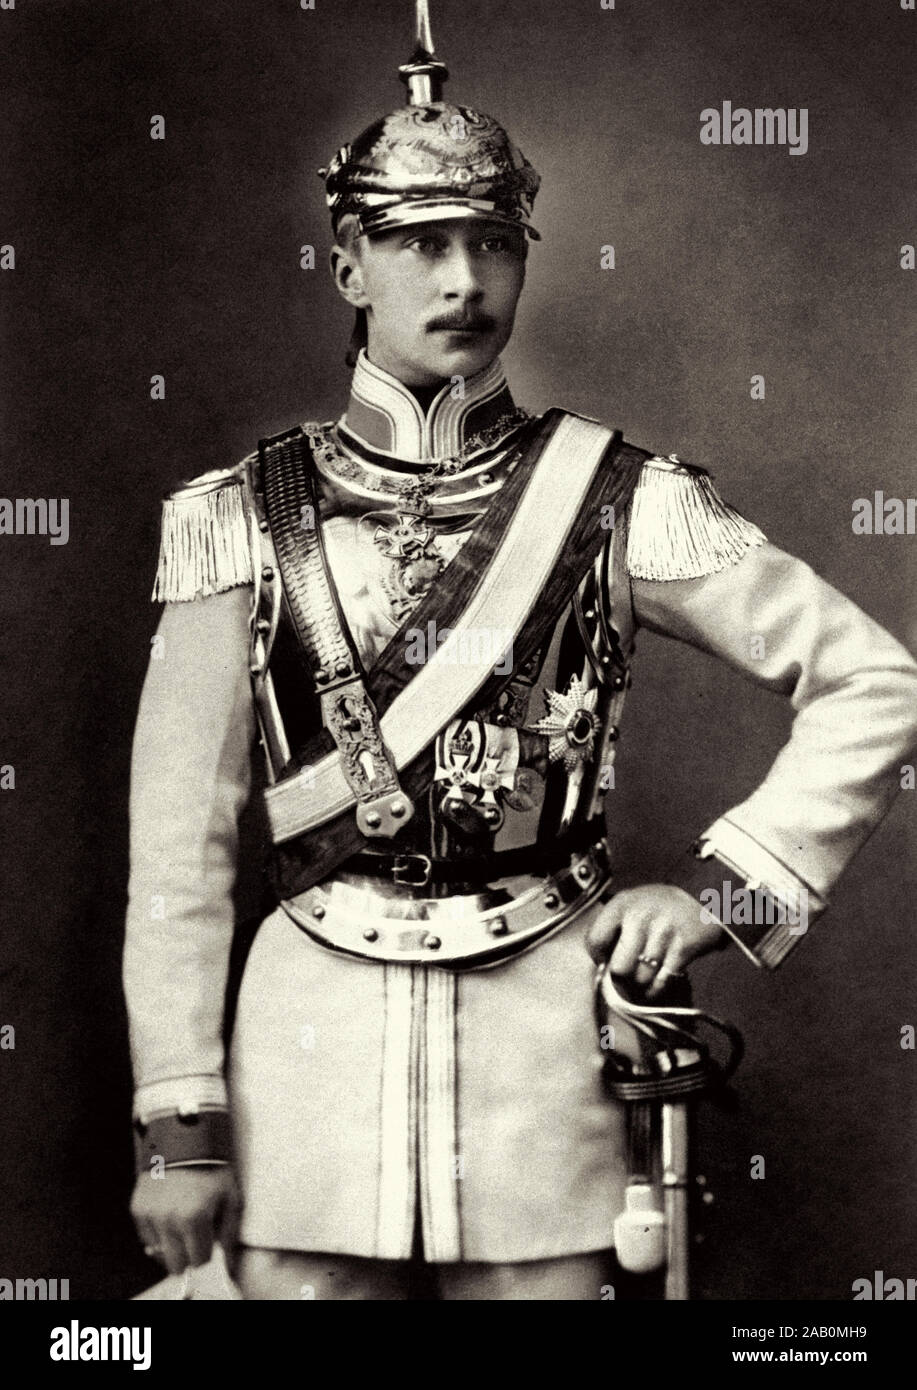 Wilhelm, Prince allemand (1882 - 1951) était le fils aîné et héritier du dernier empereur allemand, Guillaume II, et le dernier Prince de la lignée germinale Banque D'Images